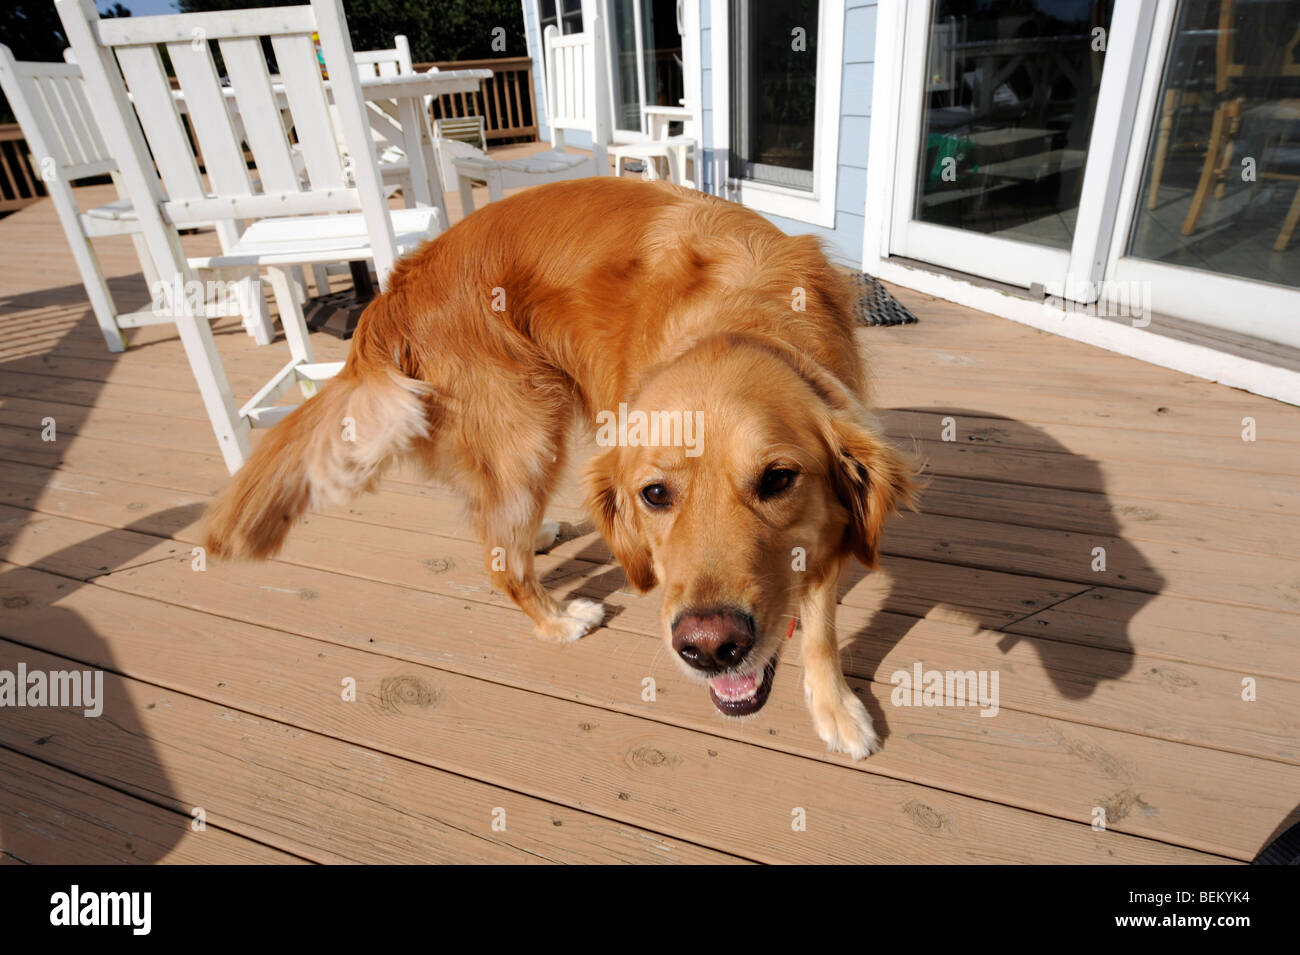 Ein Golden Retriever spielt auf einem Deck in North Carolina OuterBanks. Stockfoto